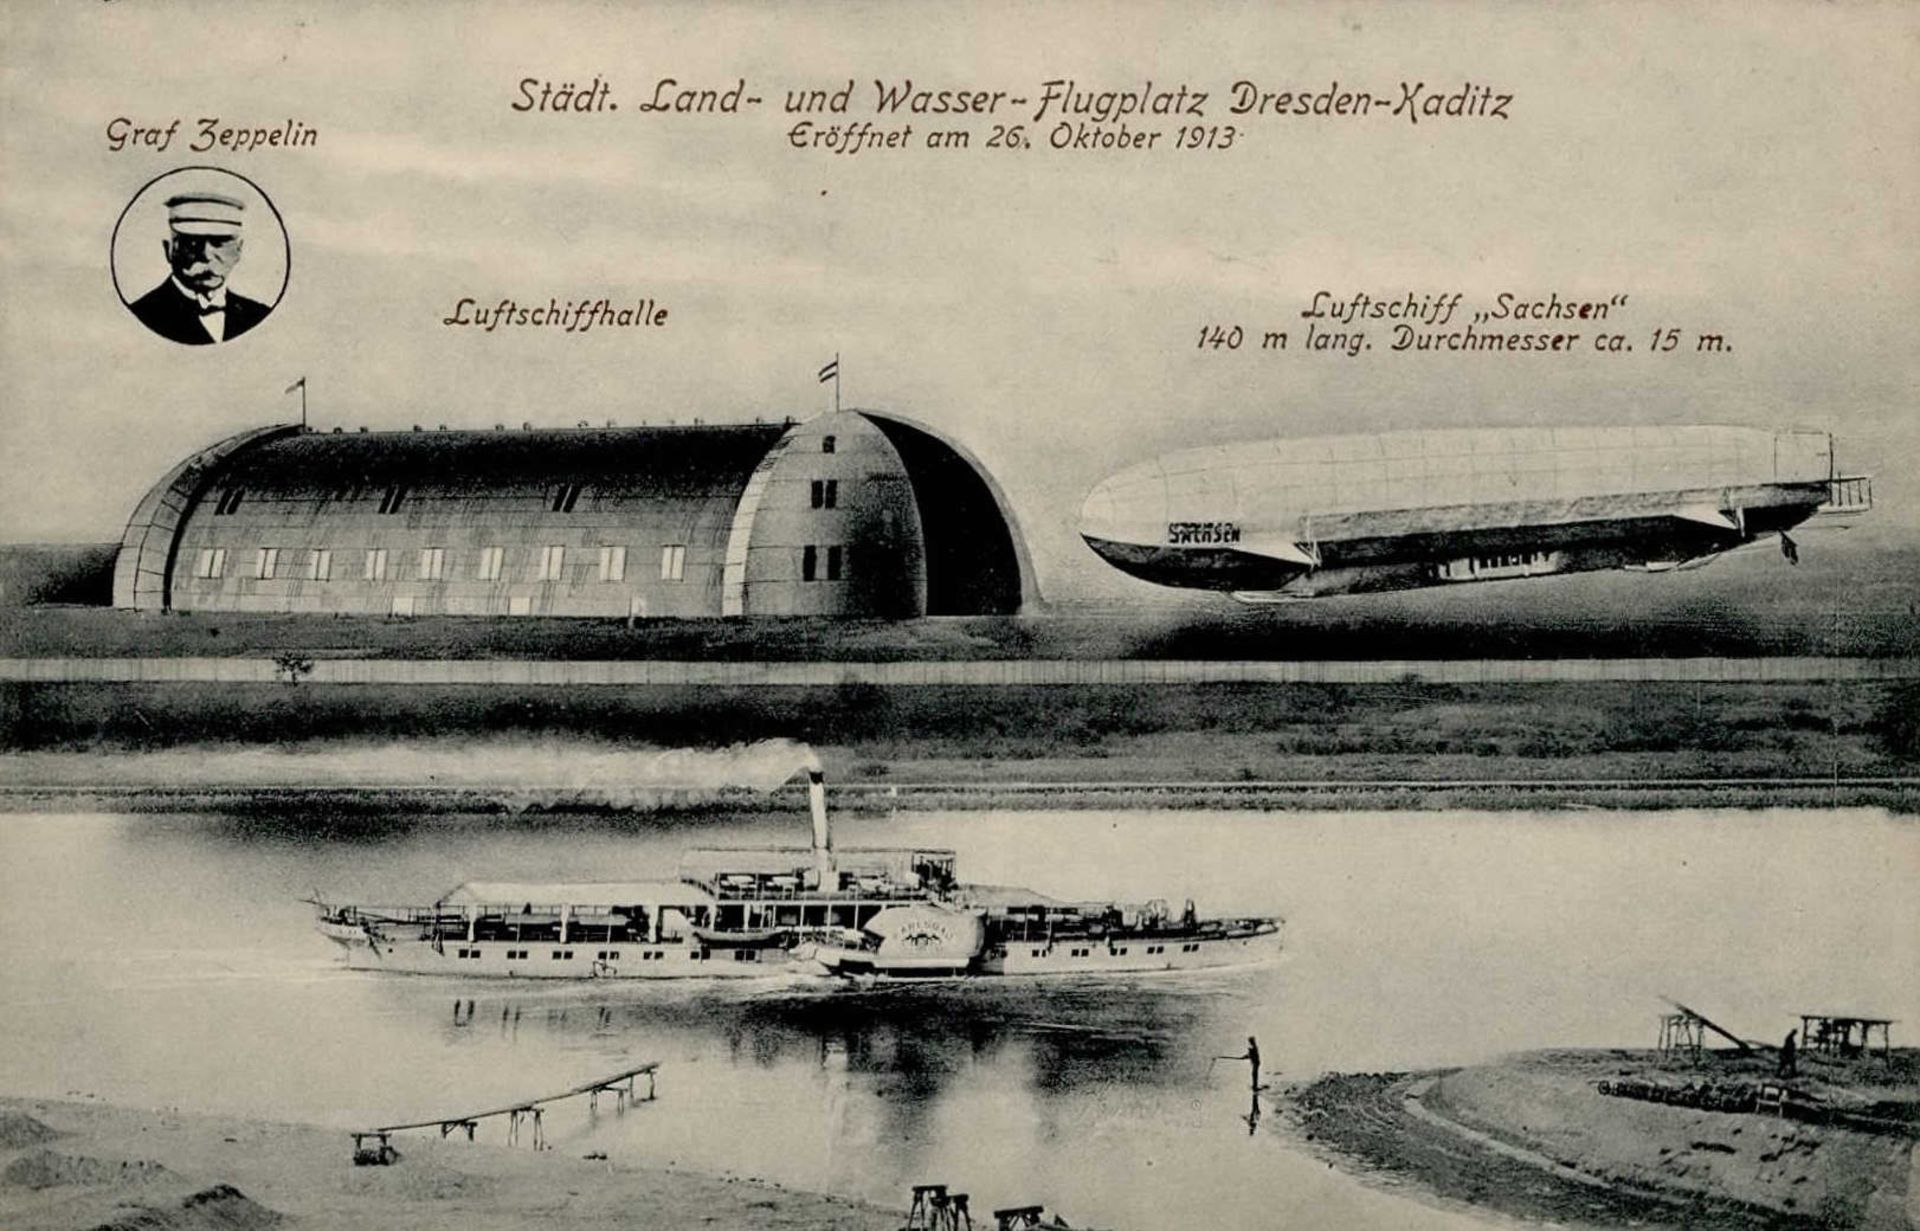 Zeppelin Dresden-Kaditz Luftschiff Sachsen Städt. Land- und Wasser-Flugplatz I-II